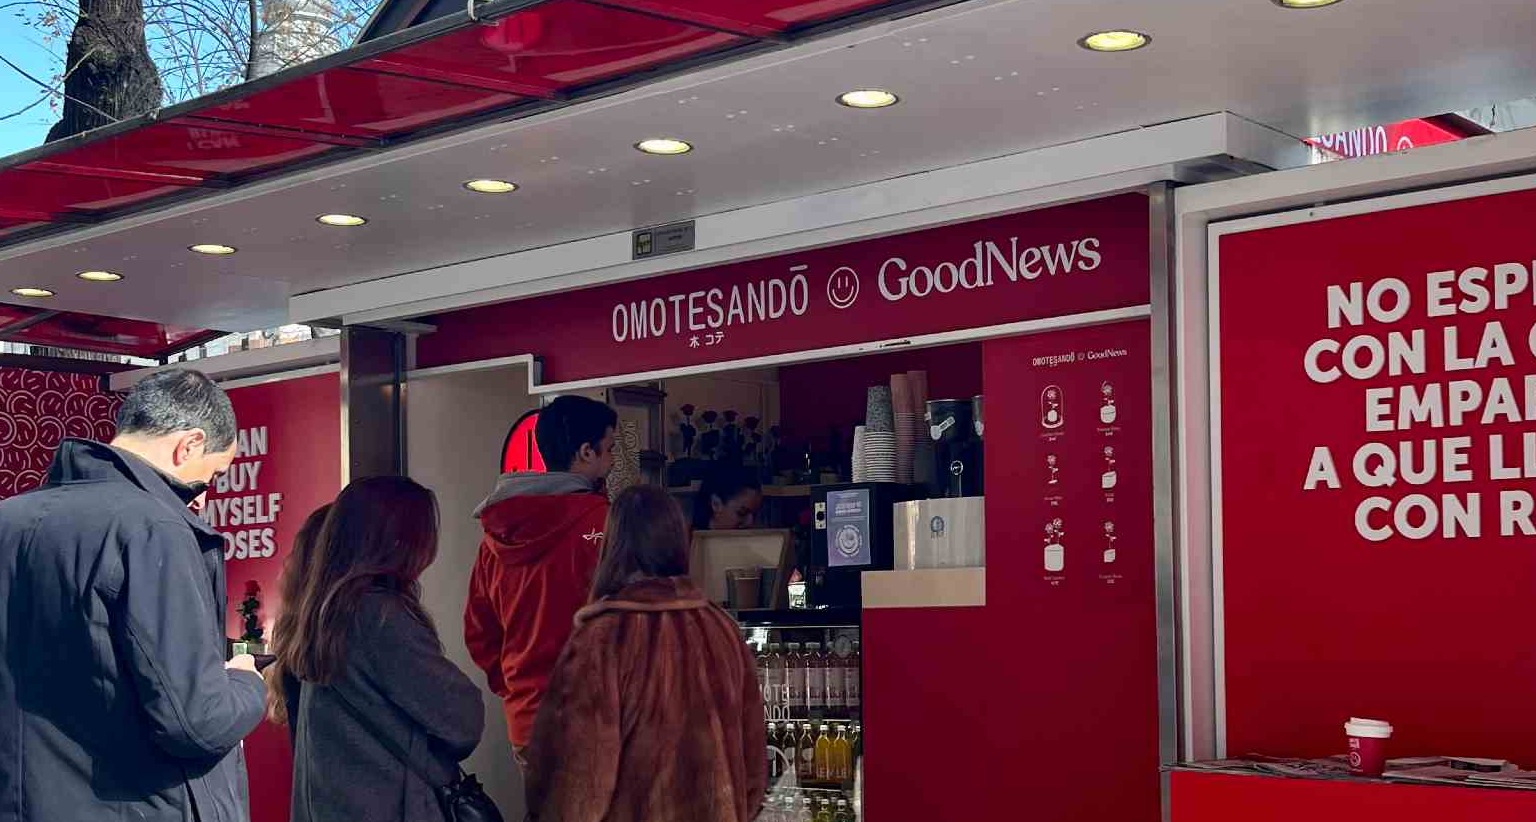 Café y marketing en punto de venta: cómo GoodNews ha impulsado su notoriedad asociándose con otras marcas